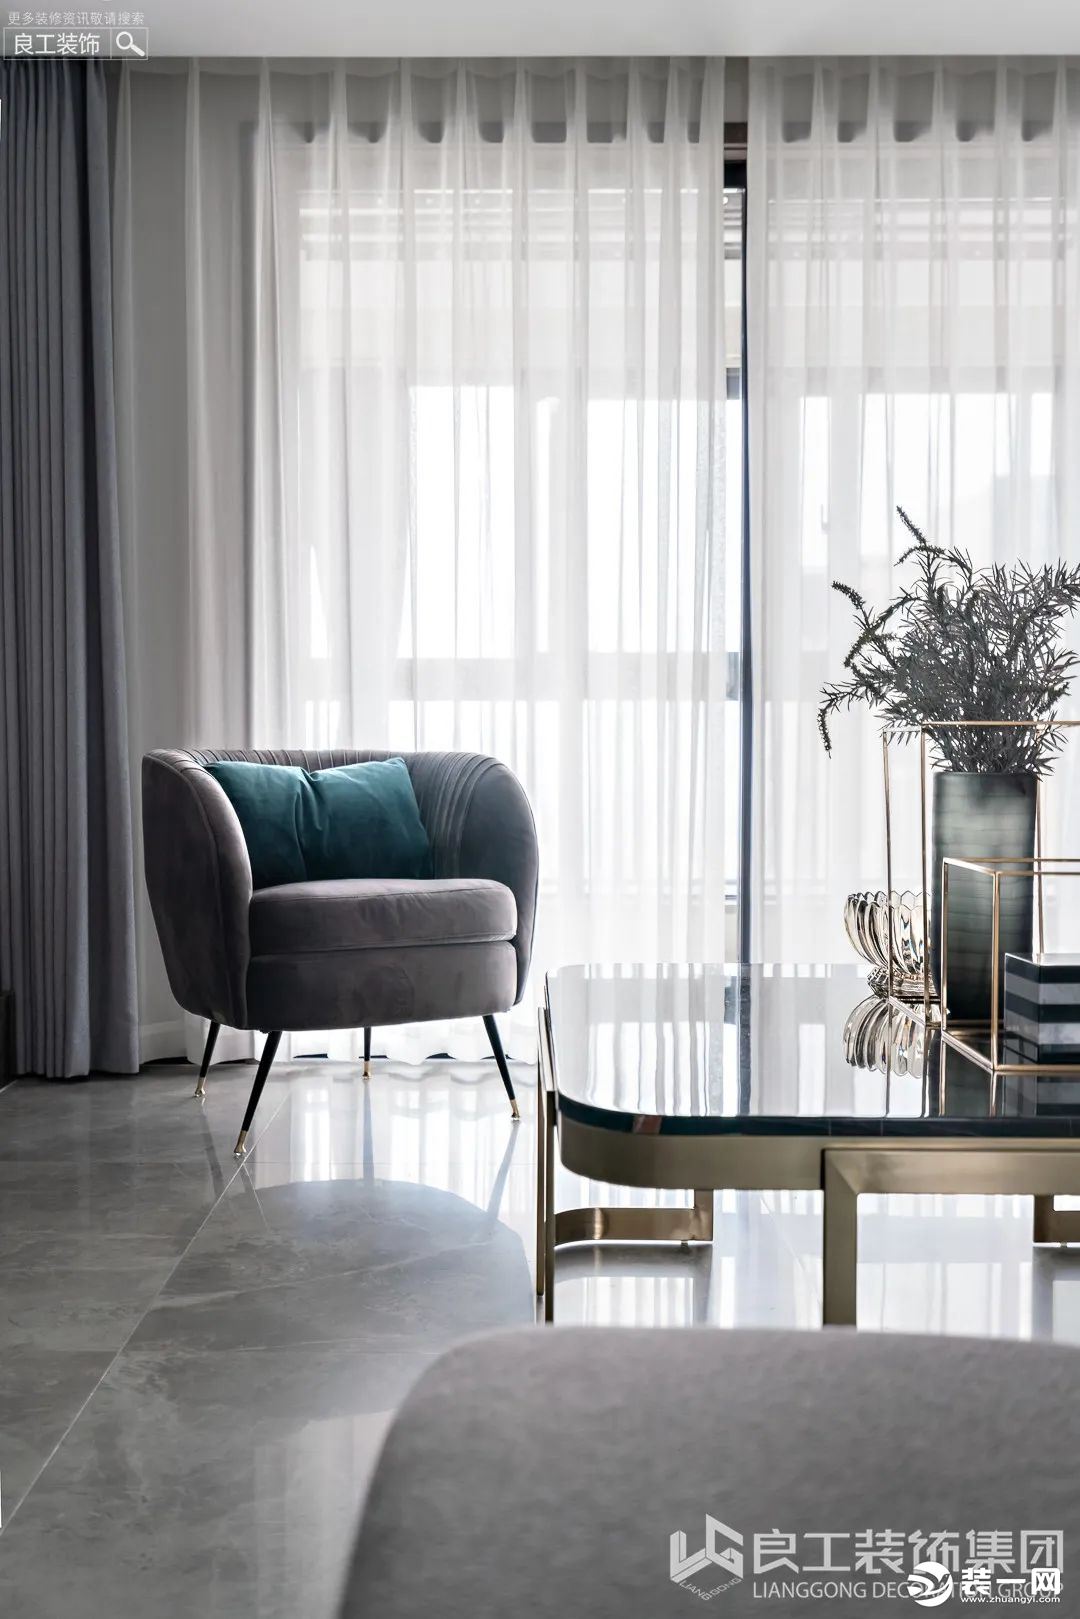 客厅局部点缀金属、丝绒元素，与主家具巧妙形成温柔恬淡的冷暖对比，融于质感又为空间增添一抹亮色